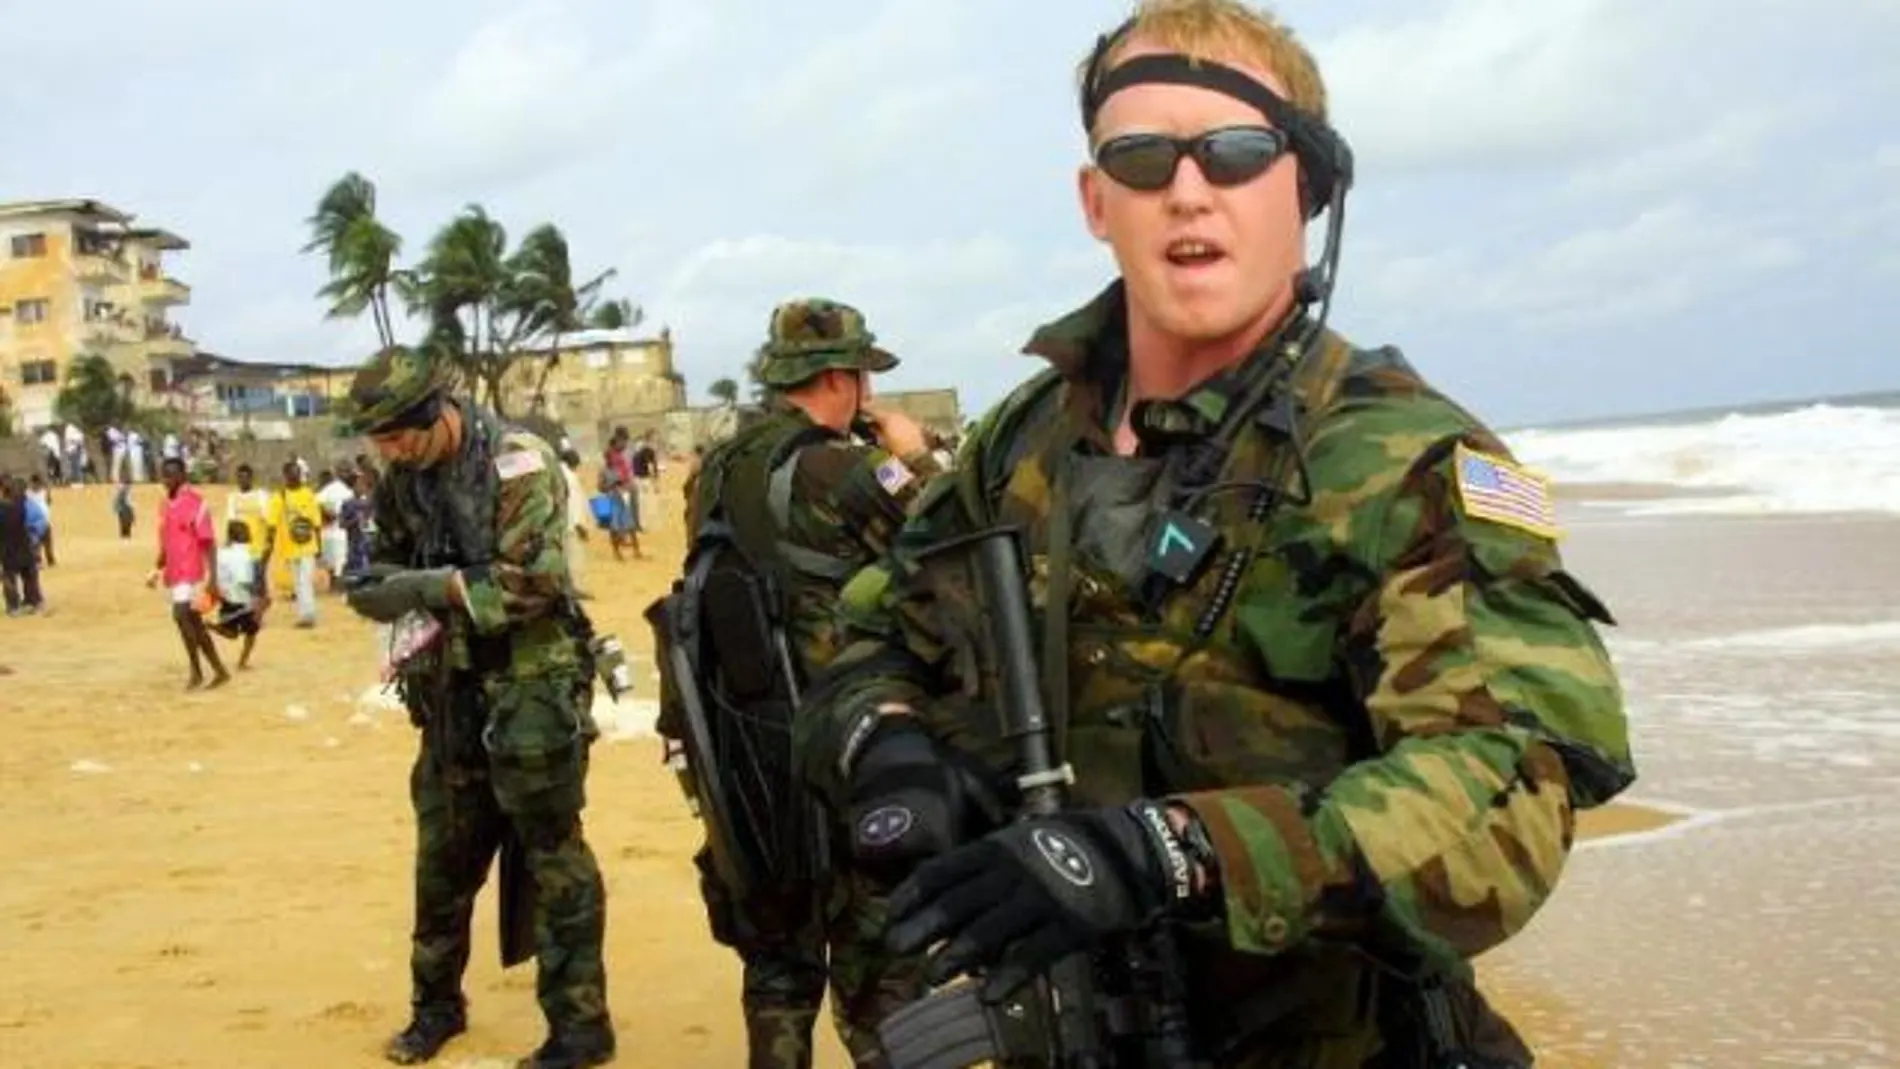 Un blog militar revela el nombre del Navy SEAL que mató a Bin Laden